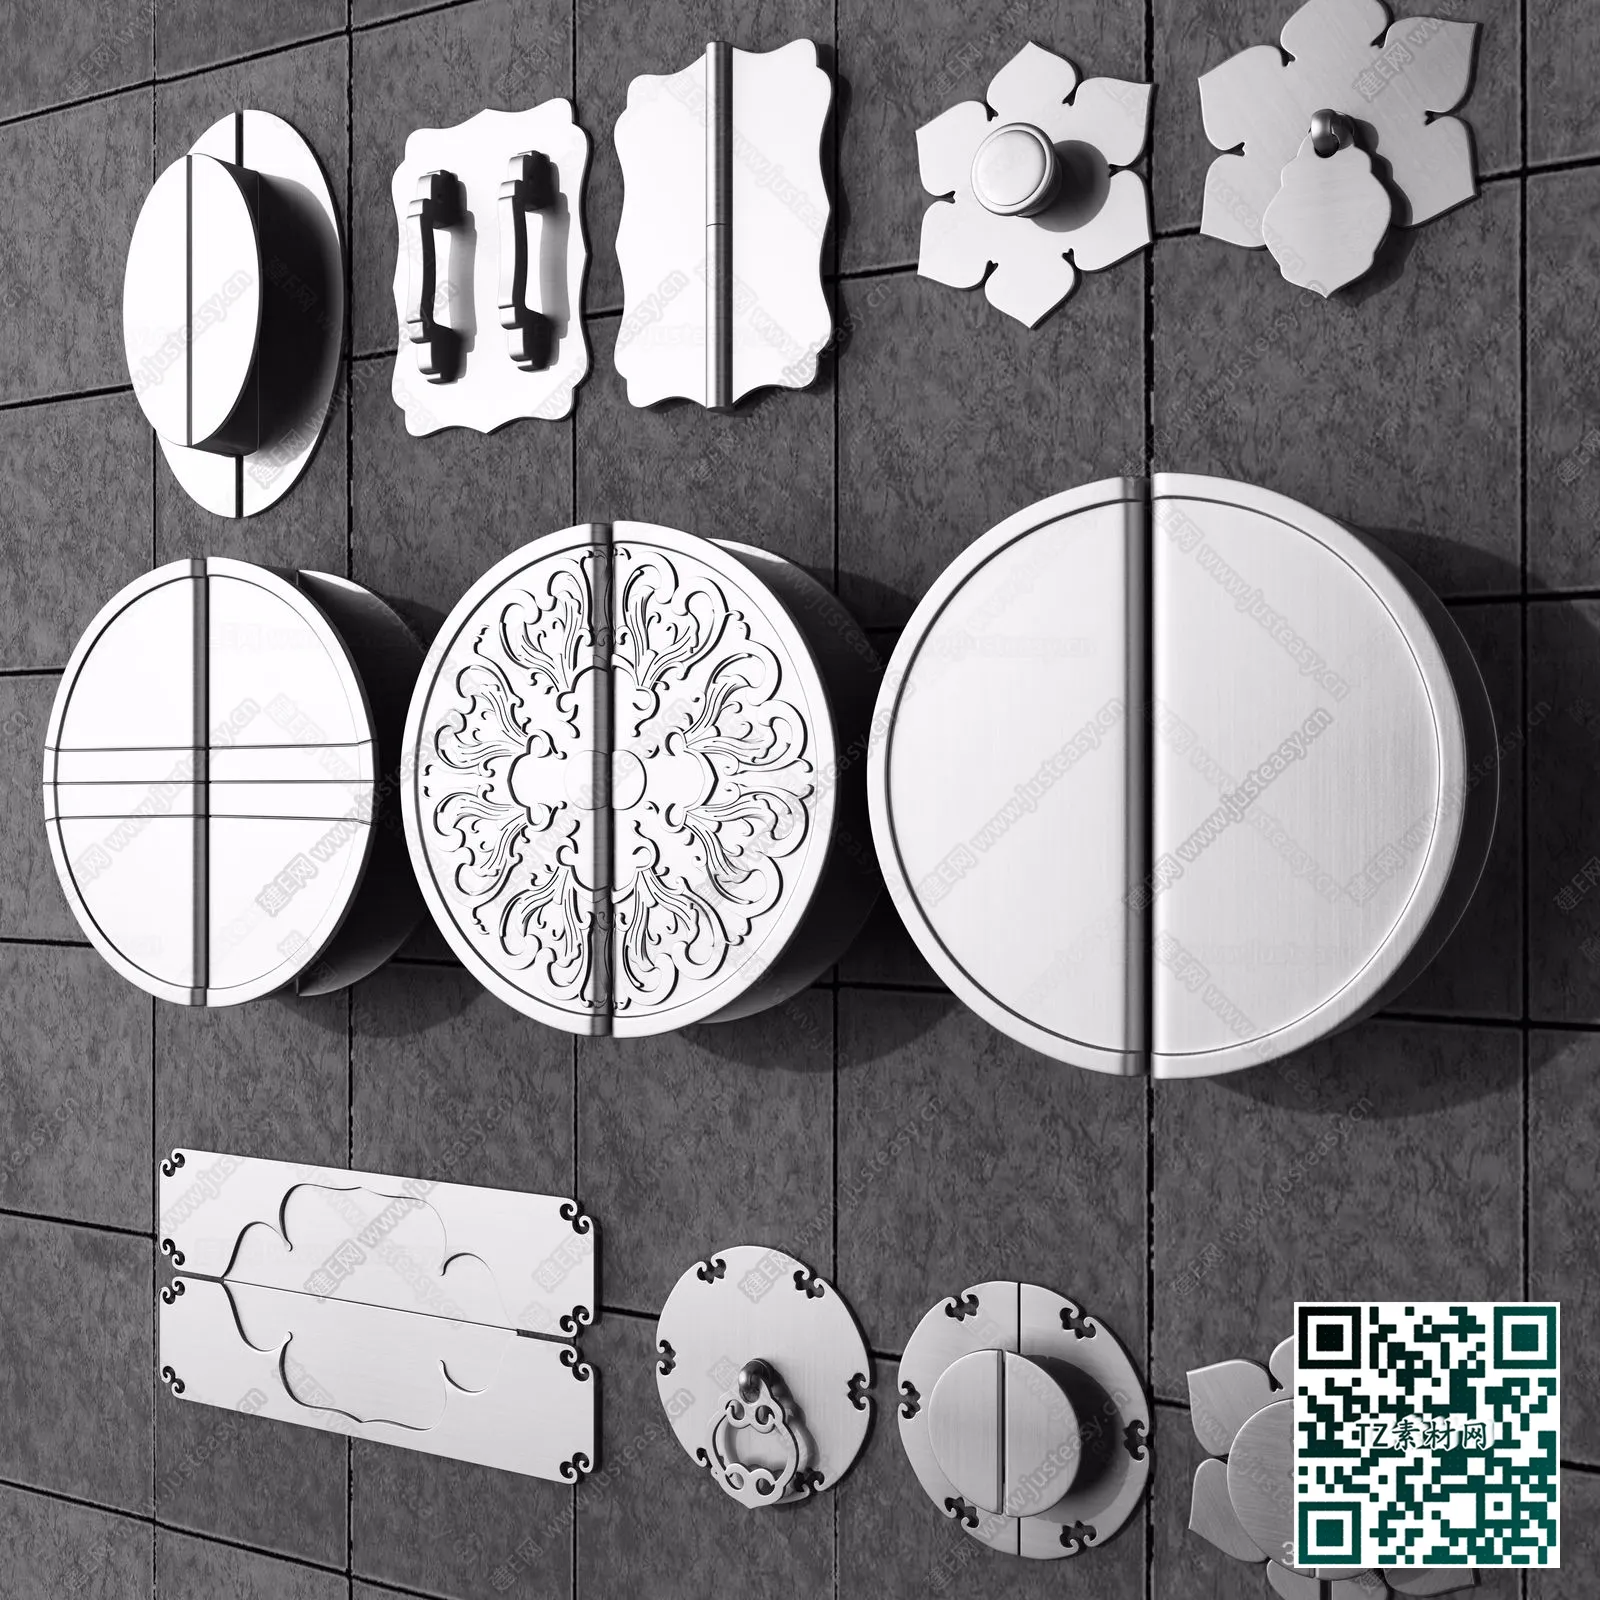 3DSKY MODELS – HANDLE DOOR 3D MODELS – 016